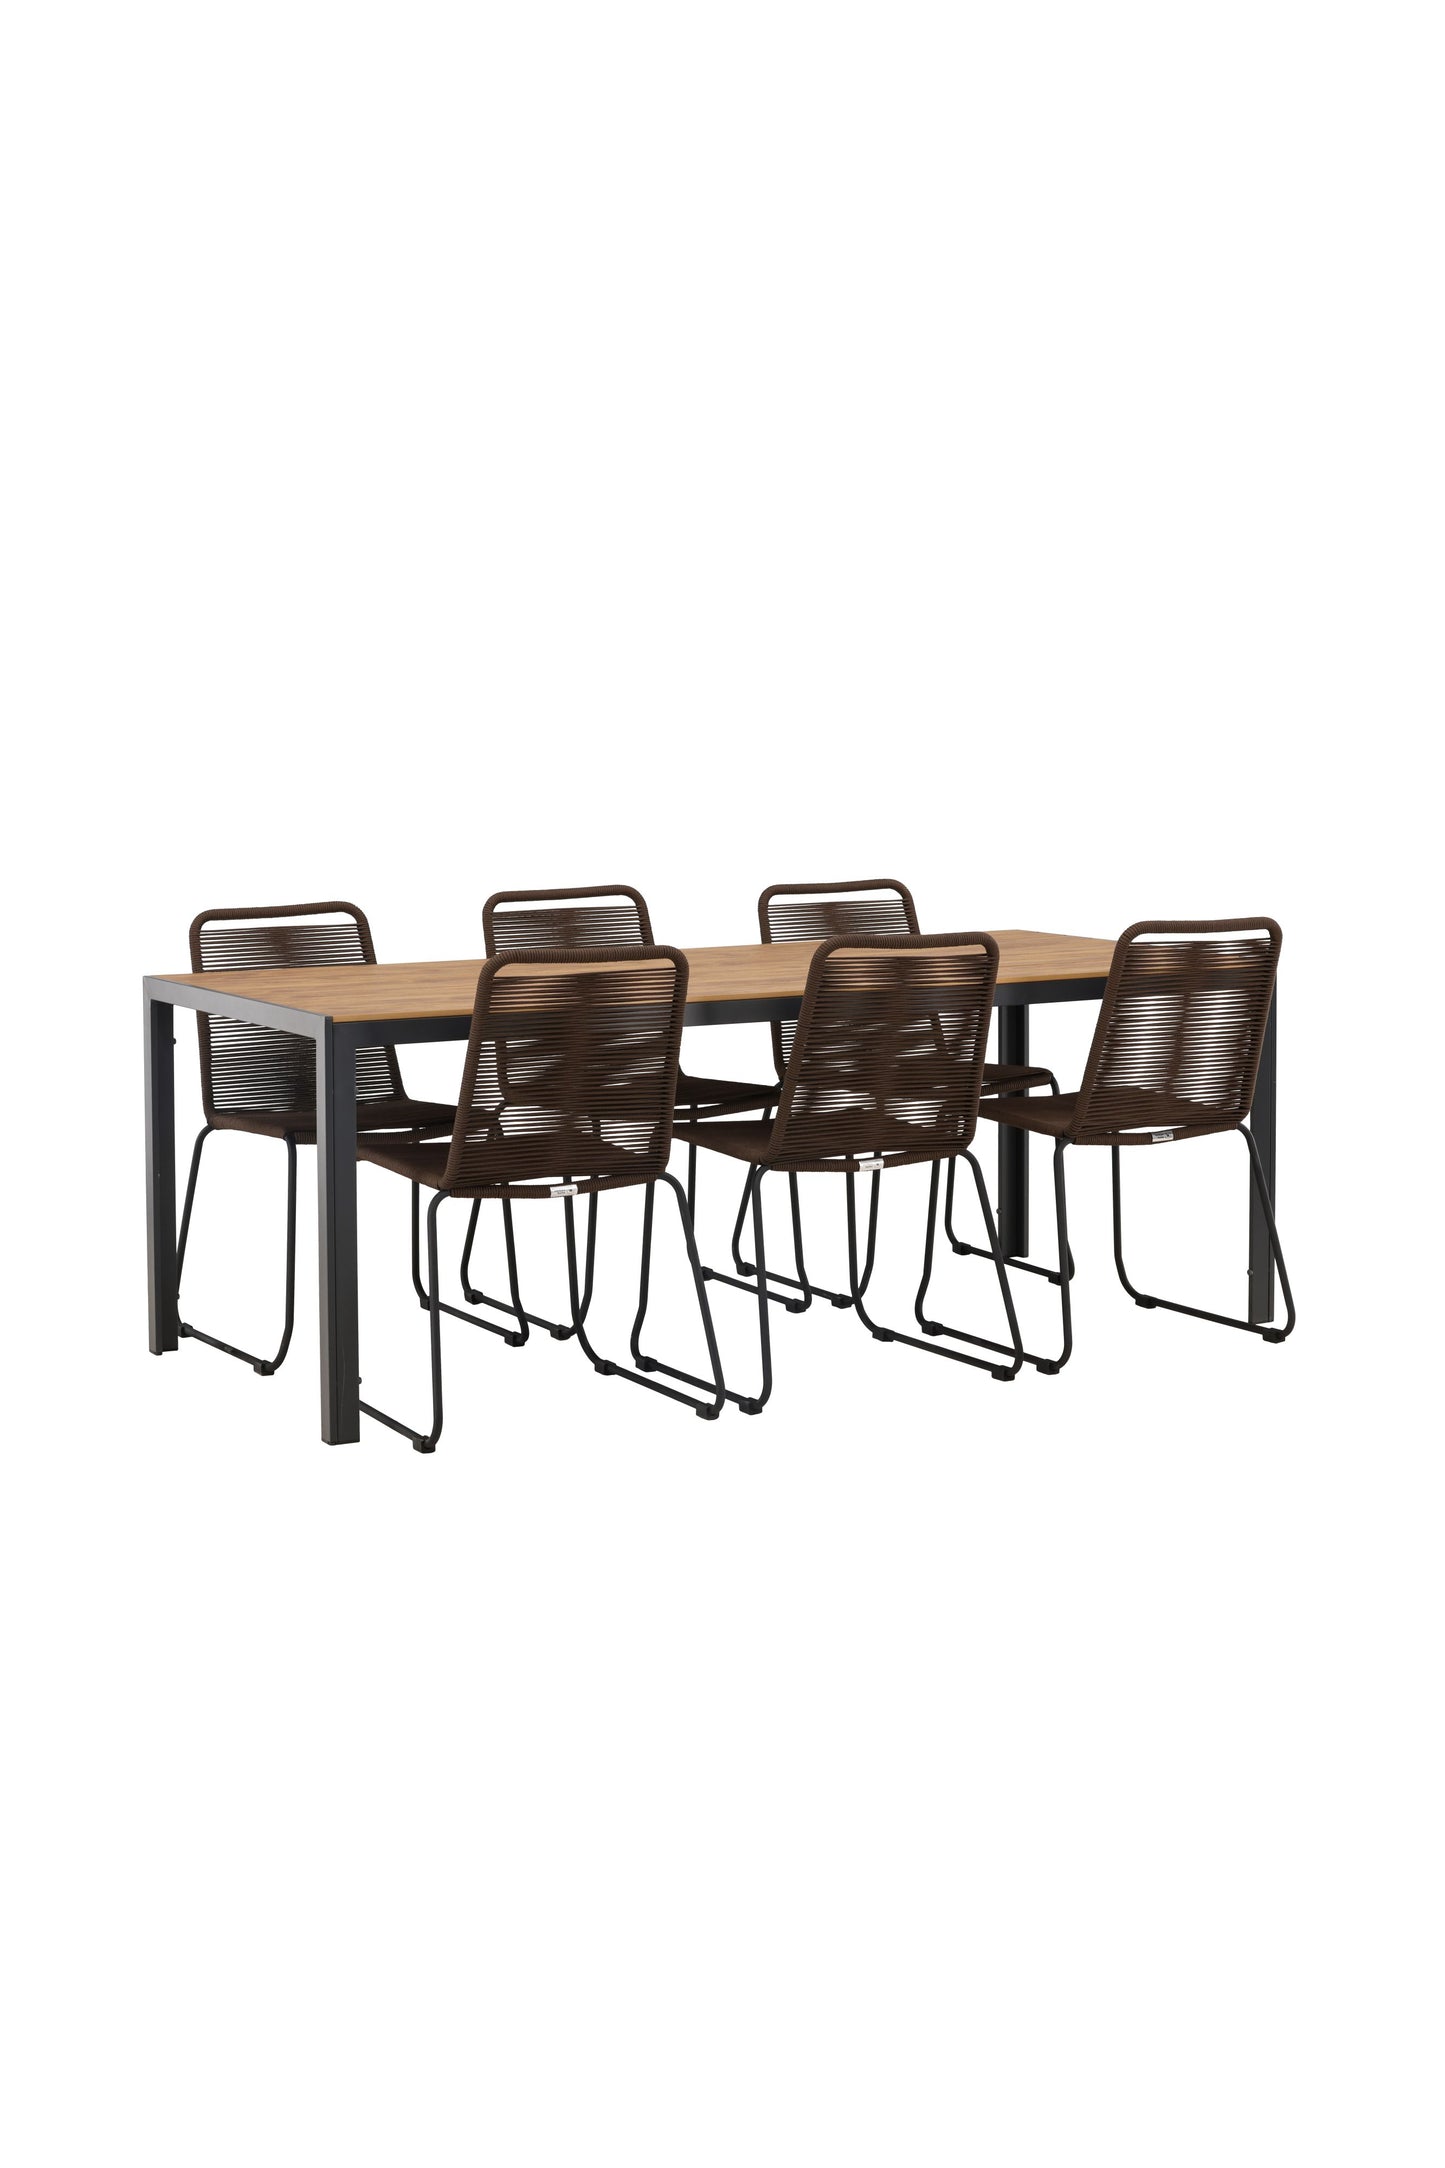 Break - Spisebord, Aluminium - Sort / Natur Rektangulær 90*200* + Lidos stol Aluminium - Sort